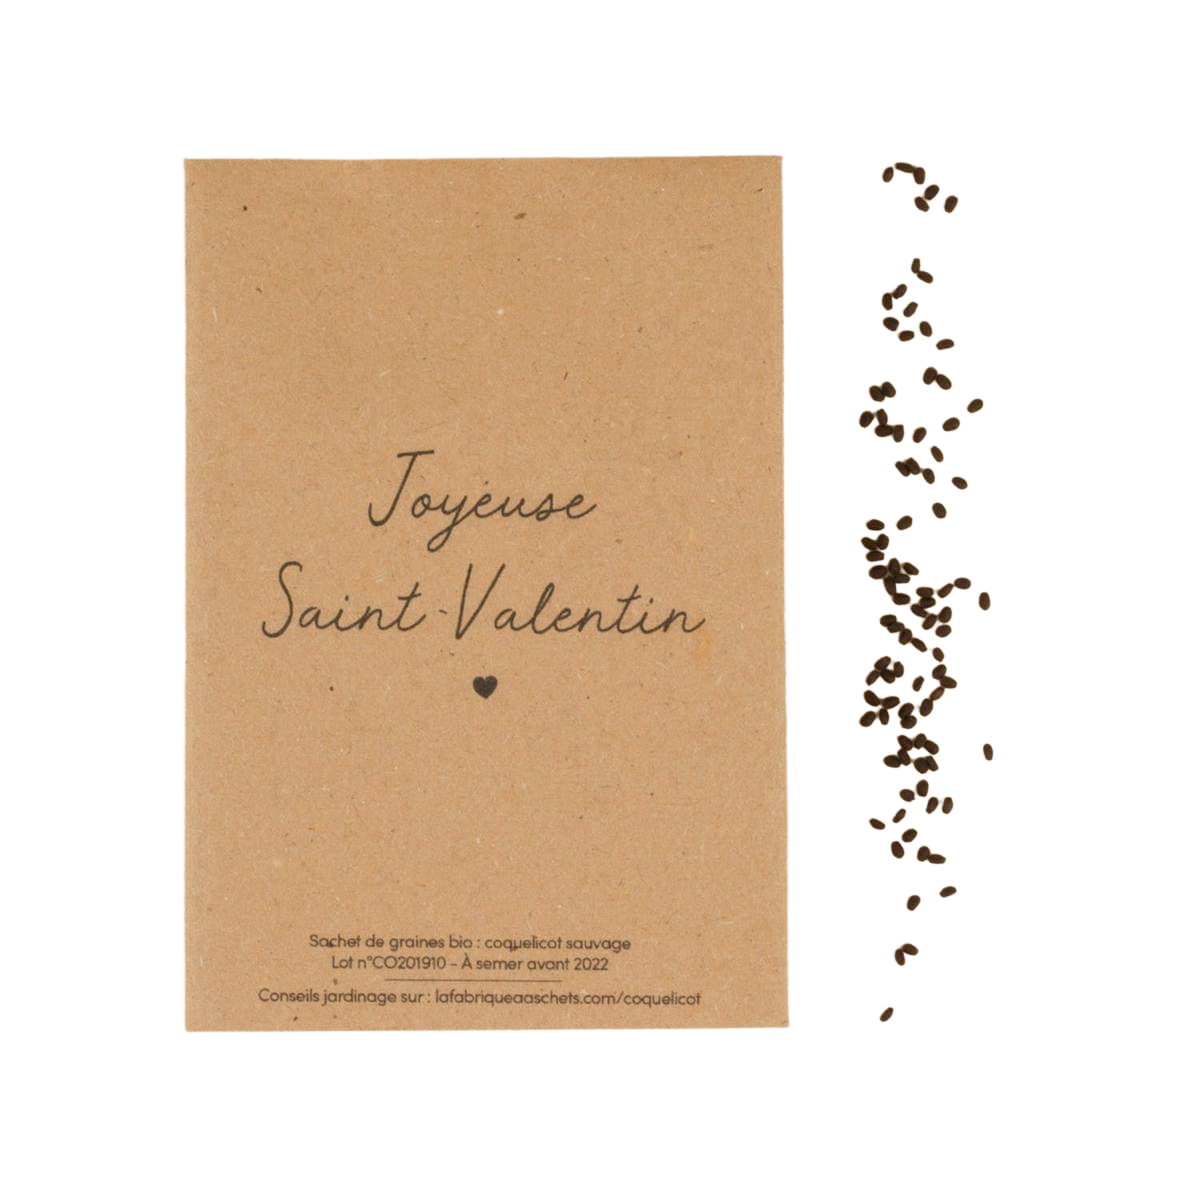 Sachet de graines bio avec message : Joyeuse St Valentin - Coquelicot